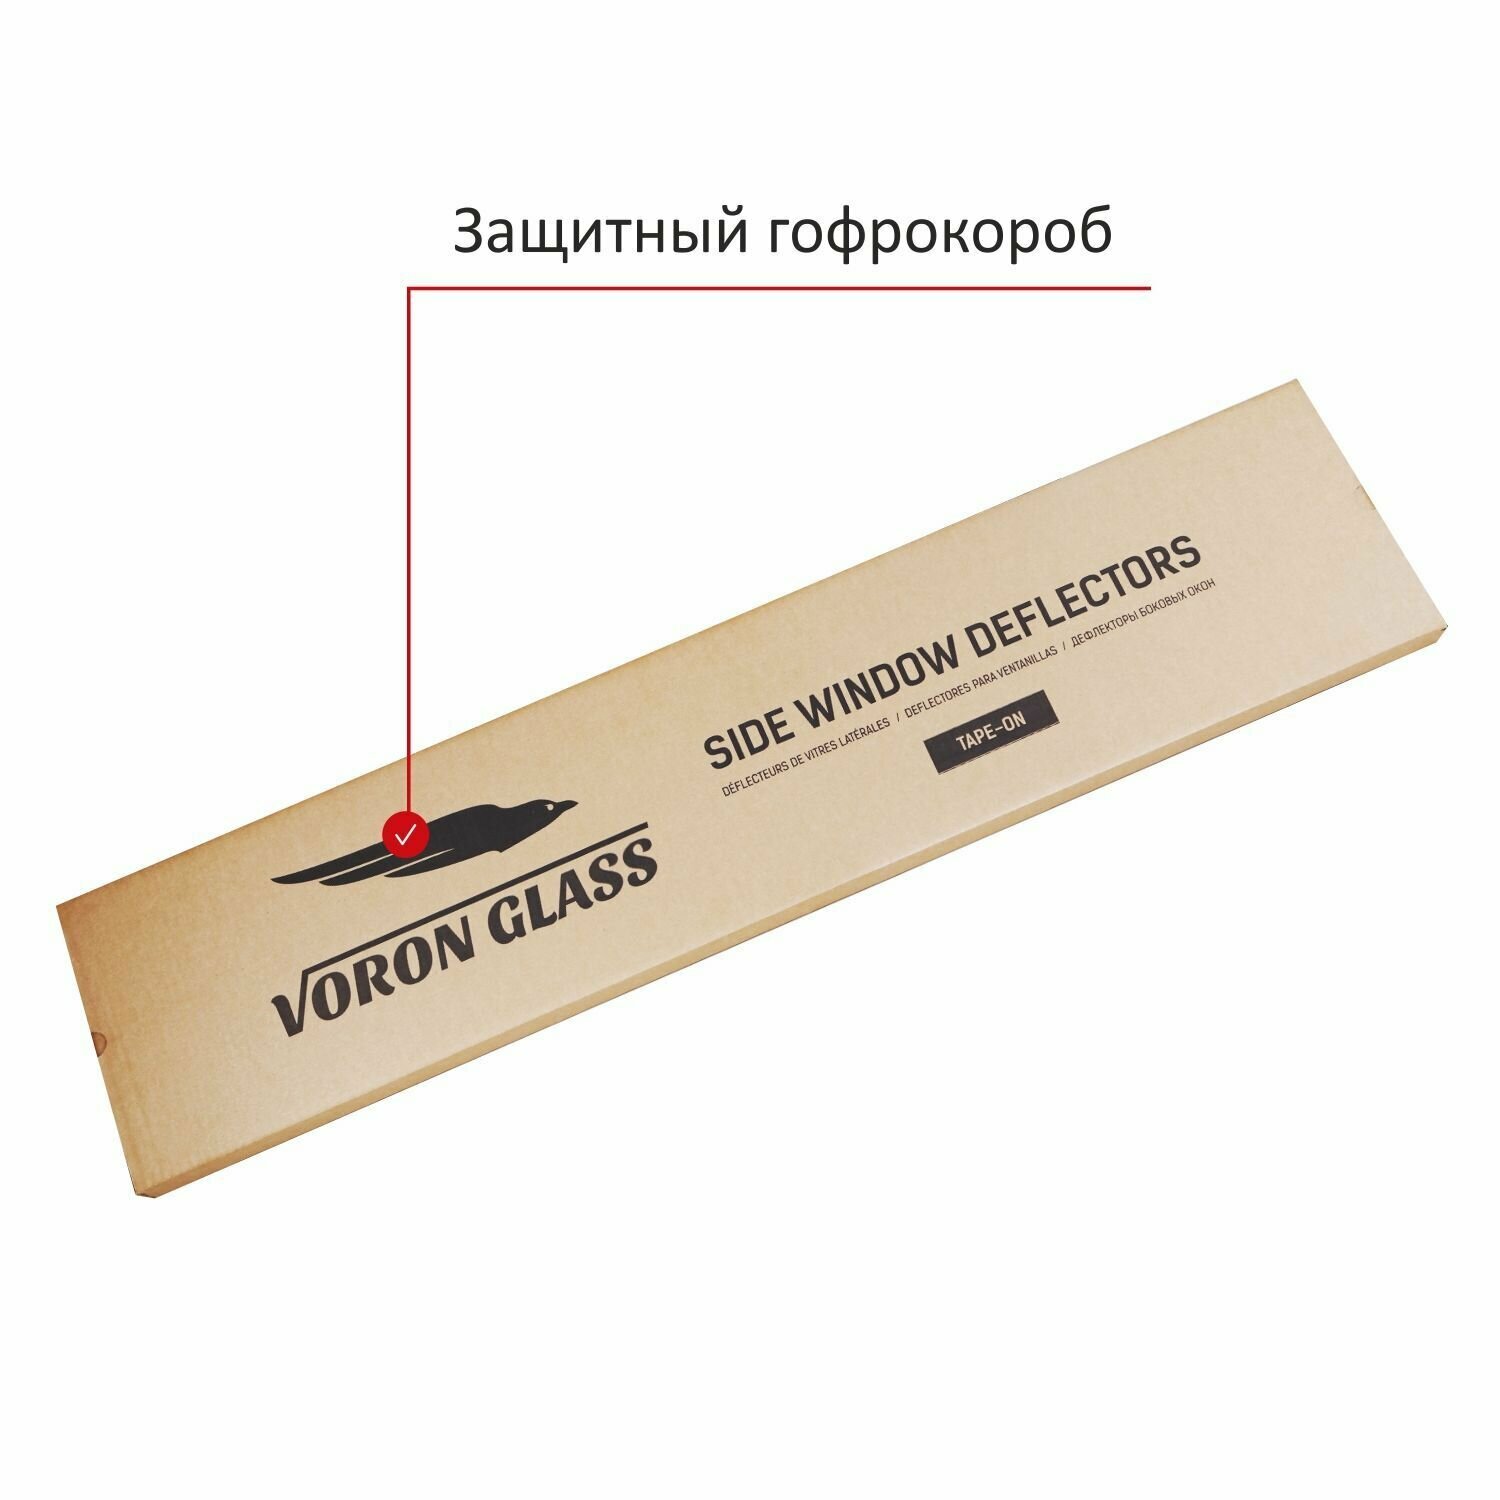 Дефлекторы окон неломающиеся Voron Glass серия Samurai для Lada Granta лифтбек накладные 4 